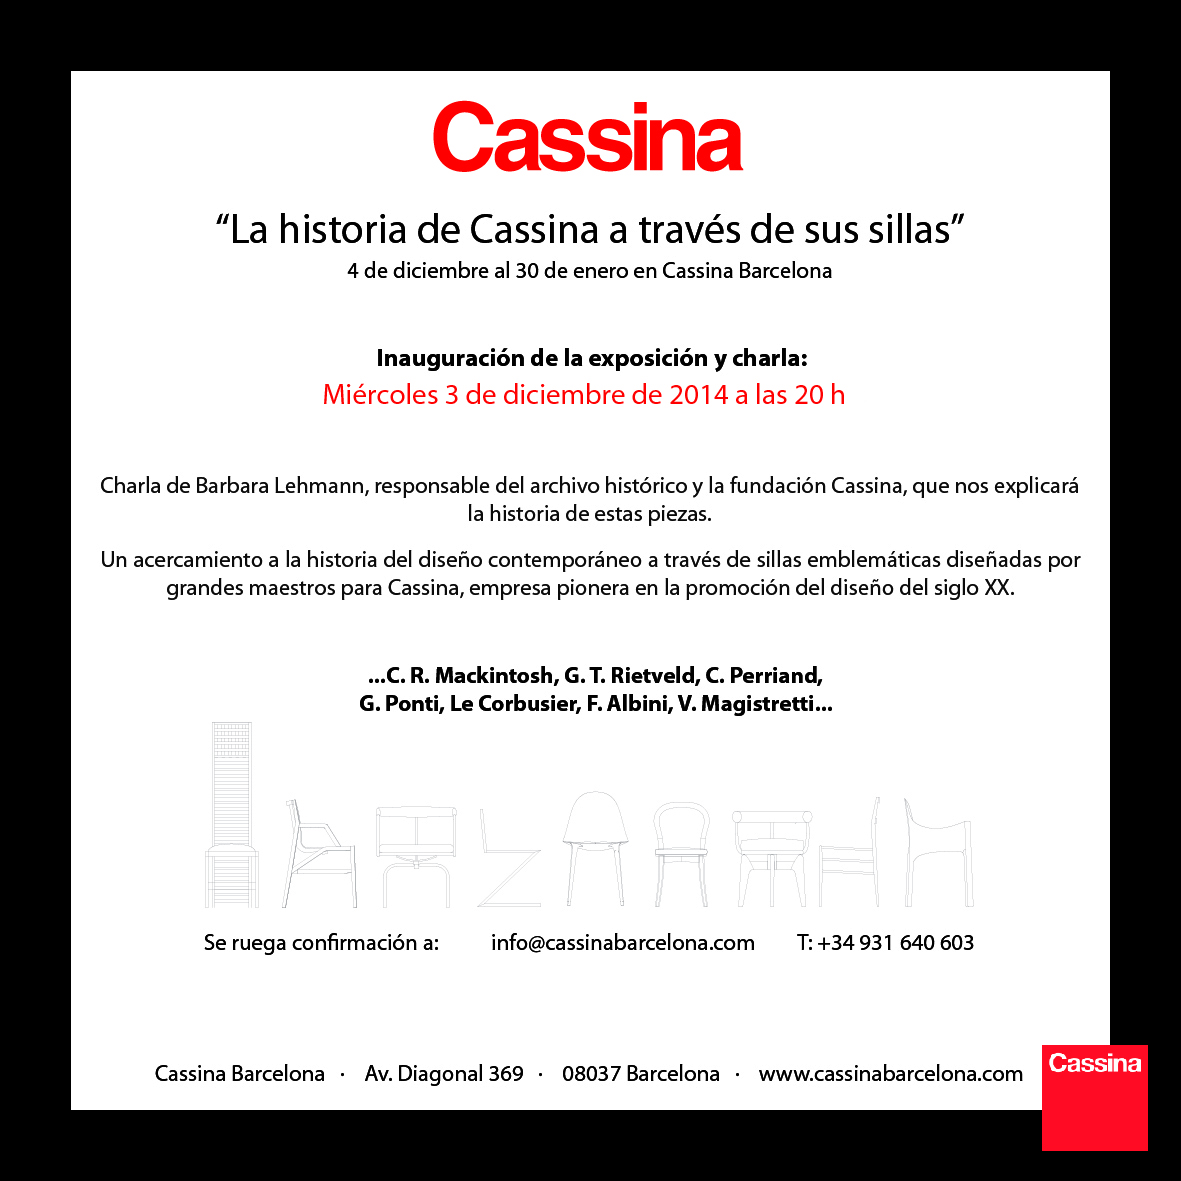 Cassina_cadires_tarjetn 20 x 20 cm